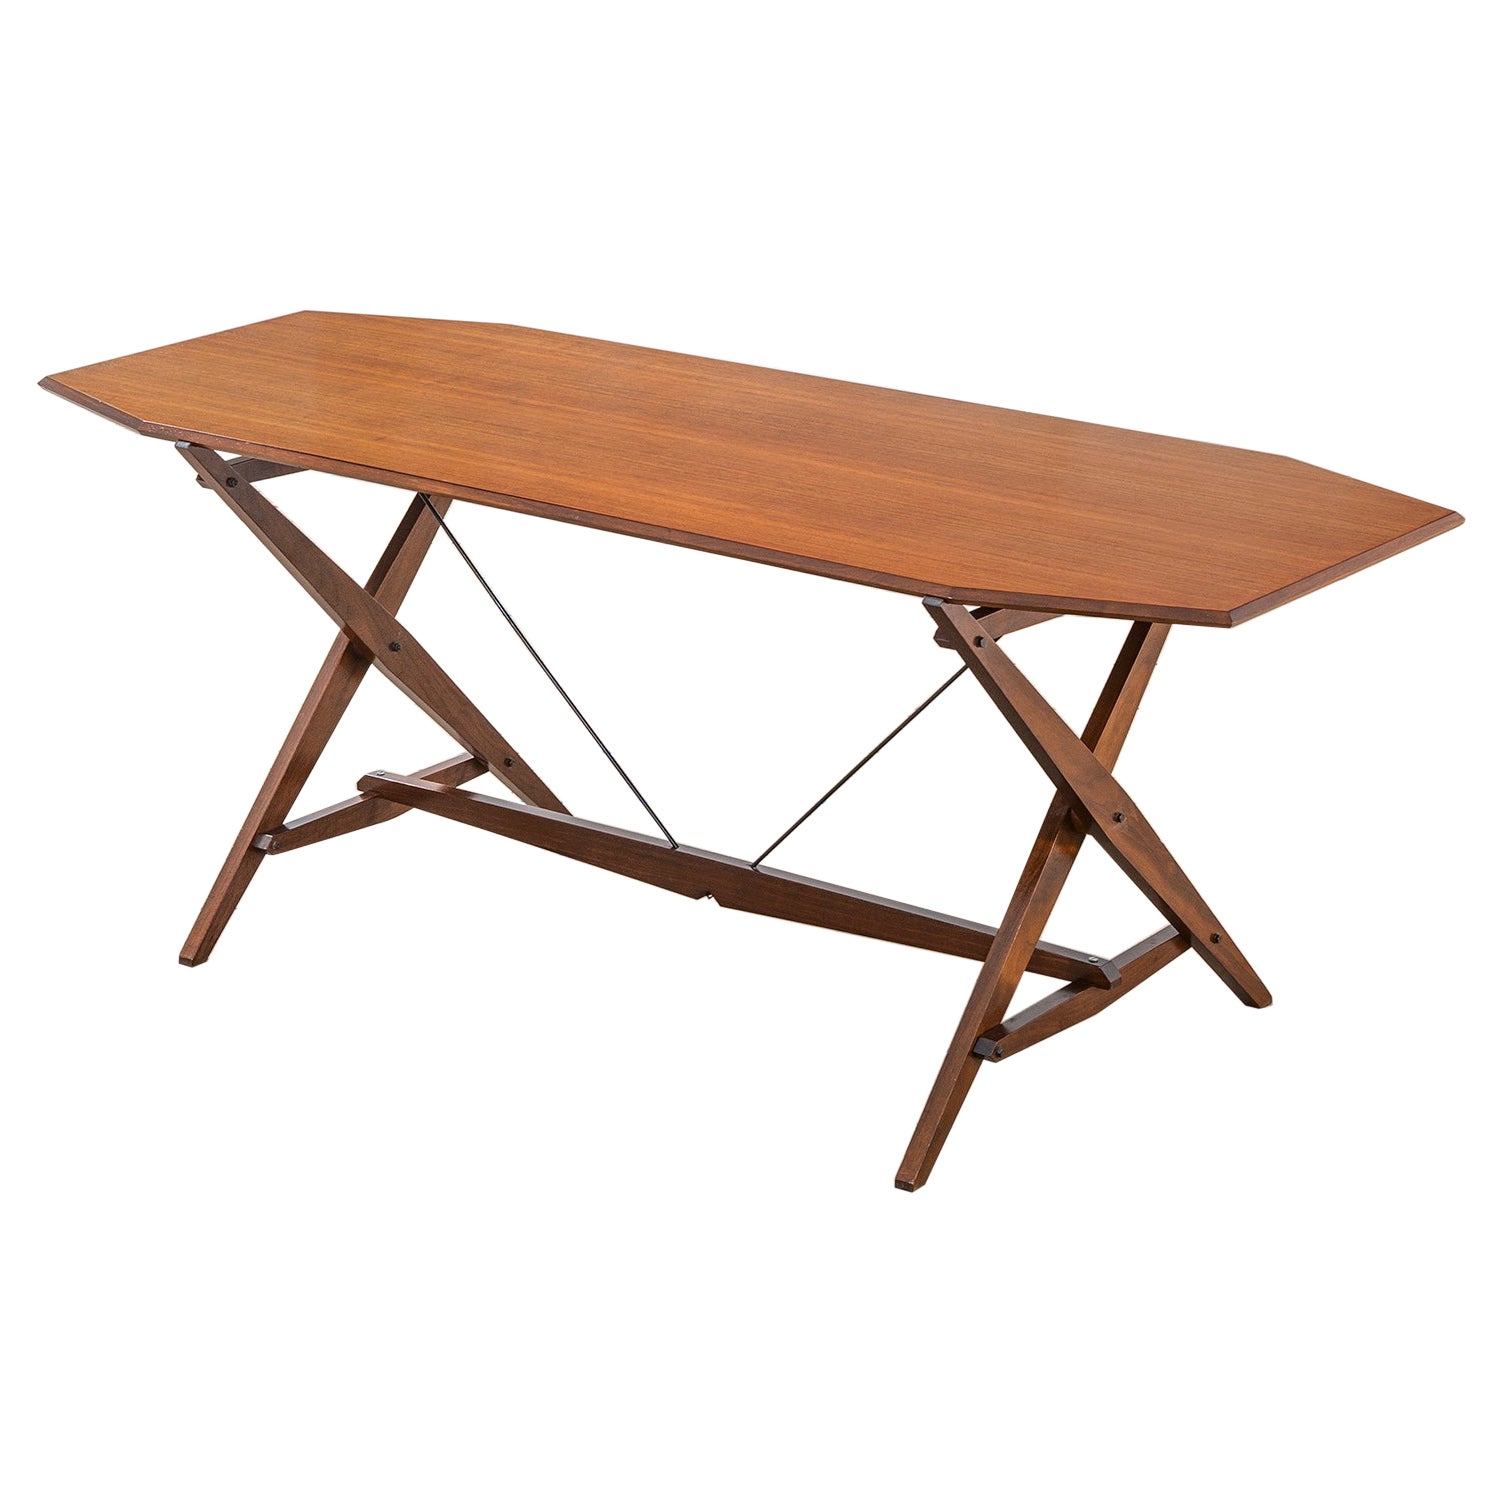 20th Century Franco Albini Table Model TL2 "Cavalletto" in Wood for Poggi 1950s For Sale